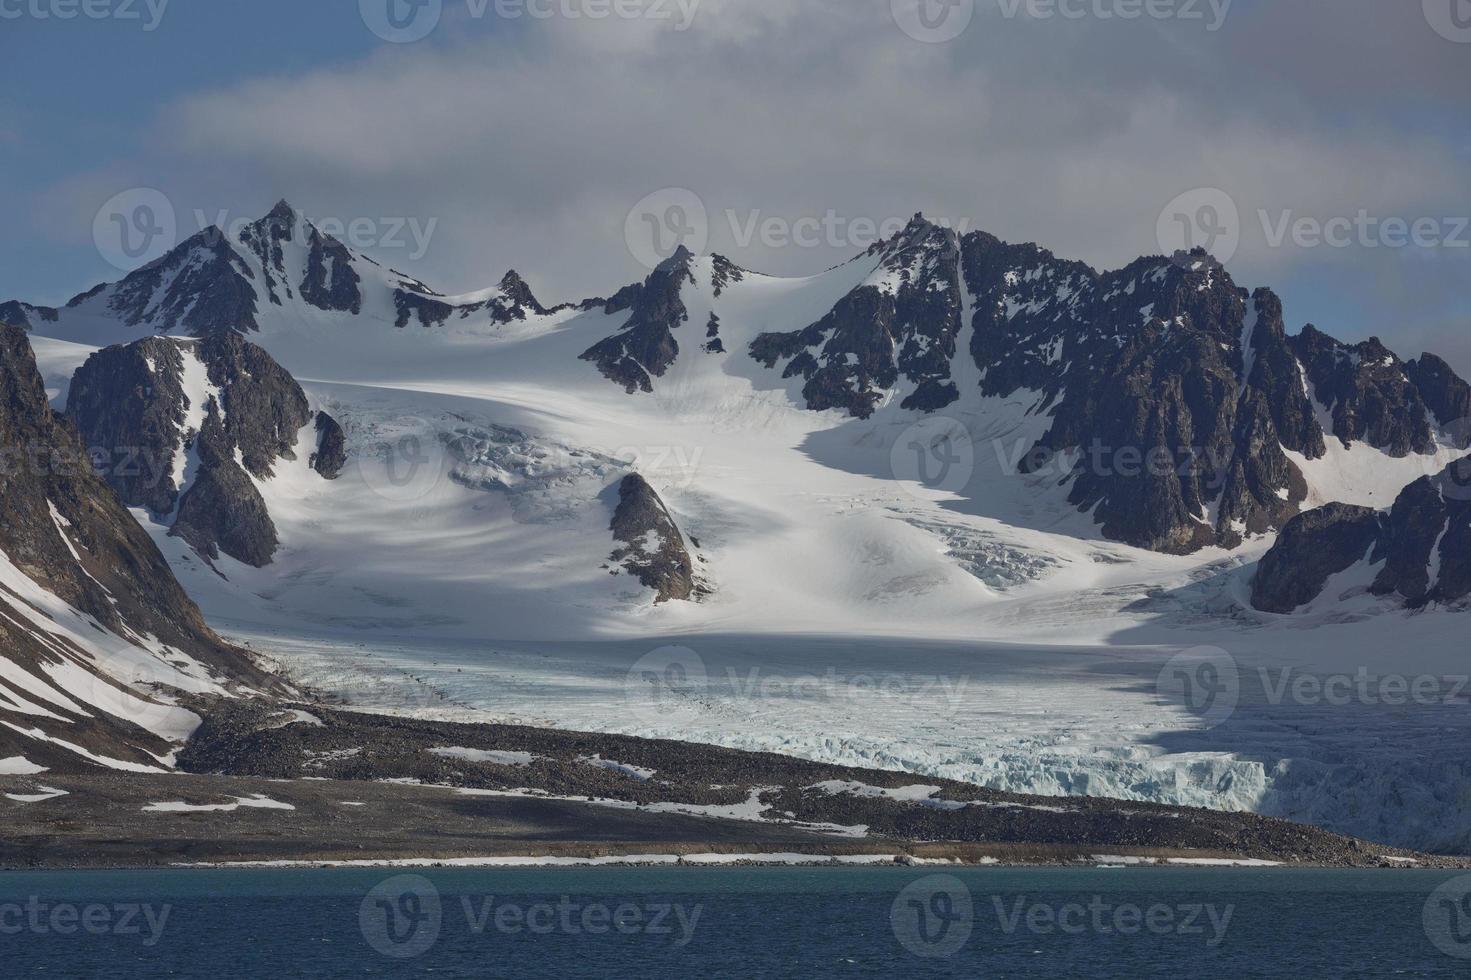 die küste und die berge von liefdefjord, Spitzbergen, spitzbergen foto